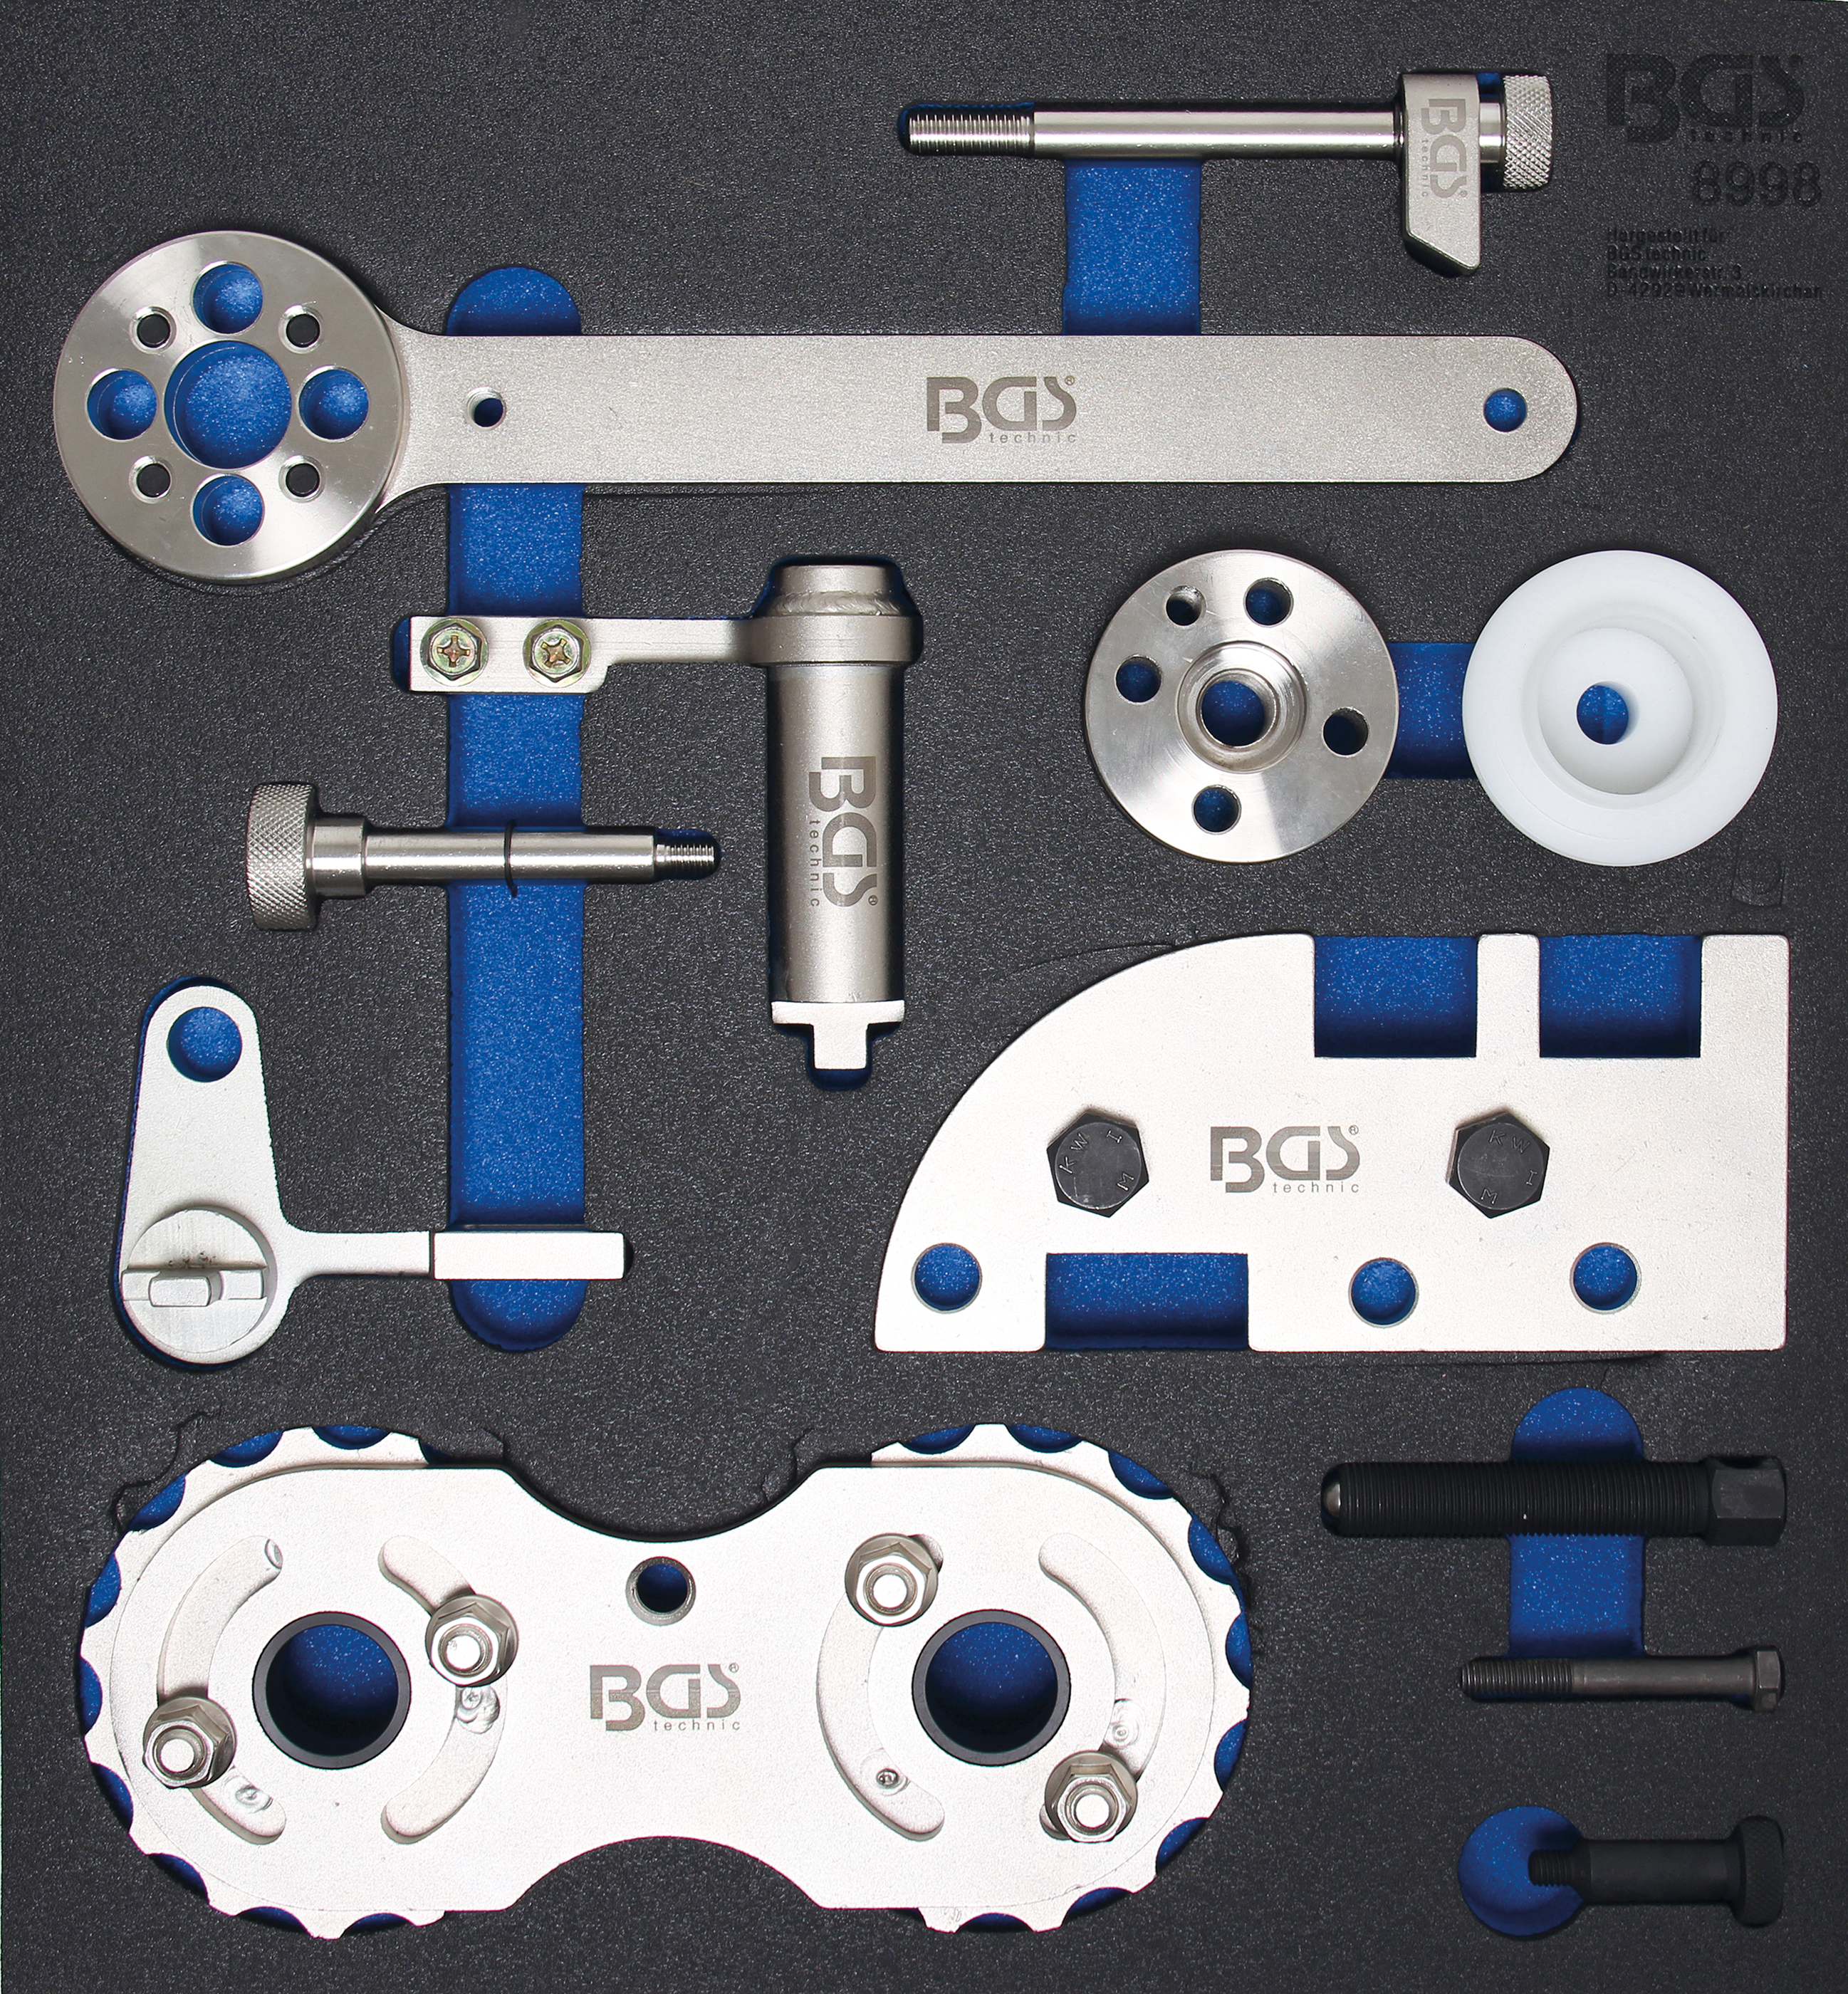 Bgs fbgs4048 bandeja de herramientas de 1 3 para carros de taller lla